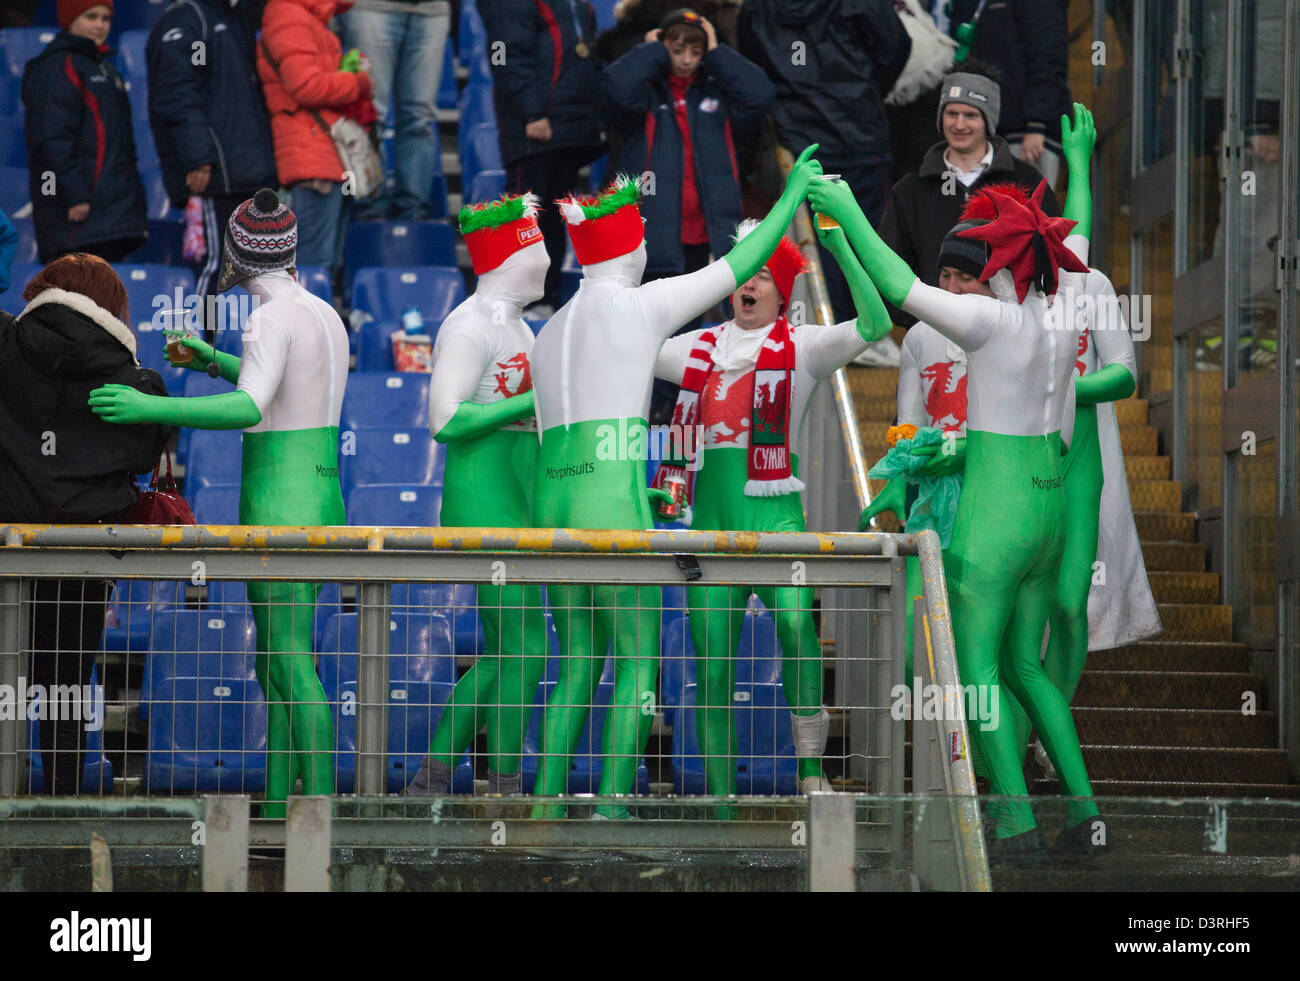 Walisischer Rugby-Fans feiern einen Wales Sieg auf dem Schlusspfiff Stockfoto